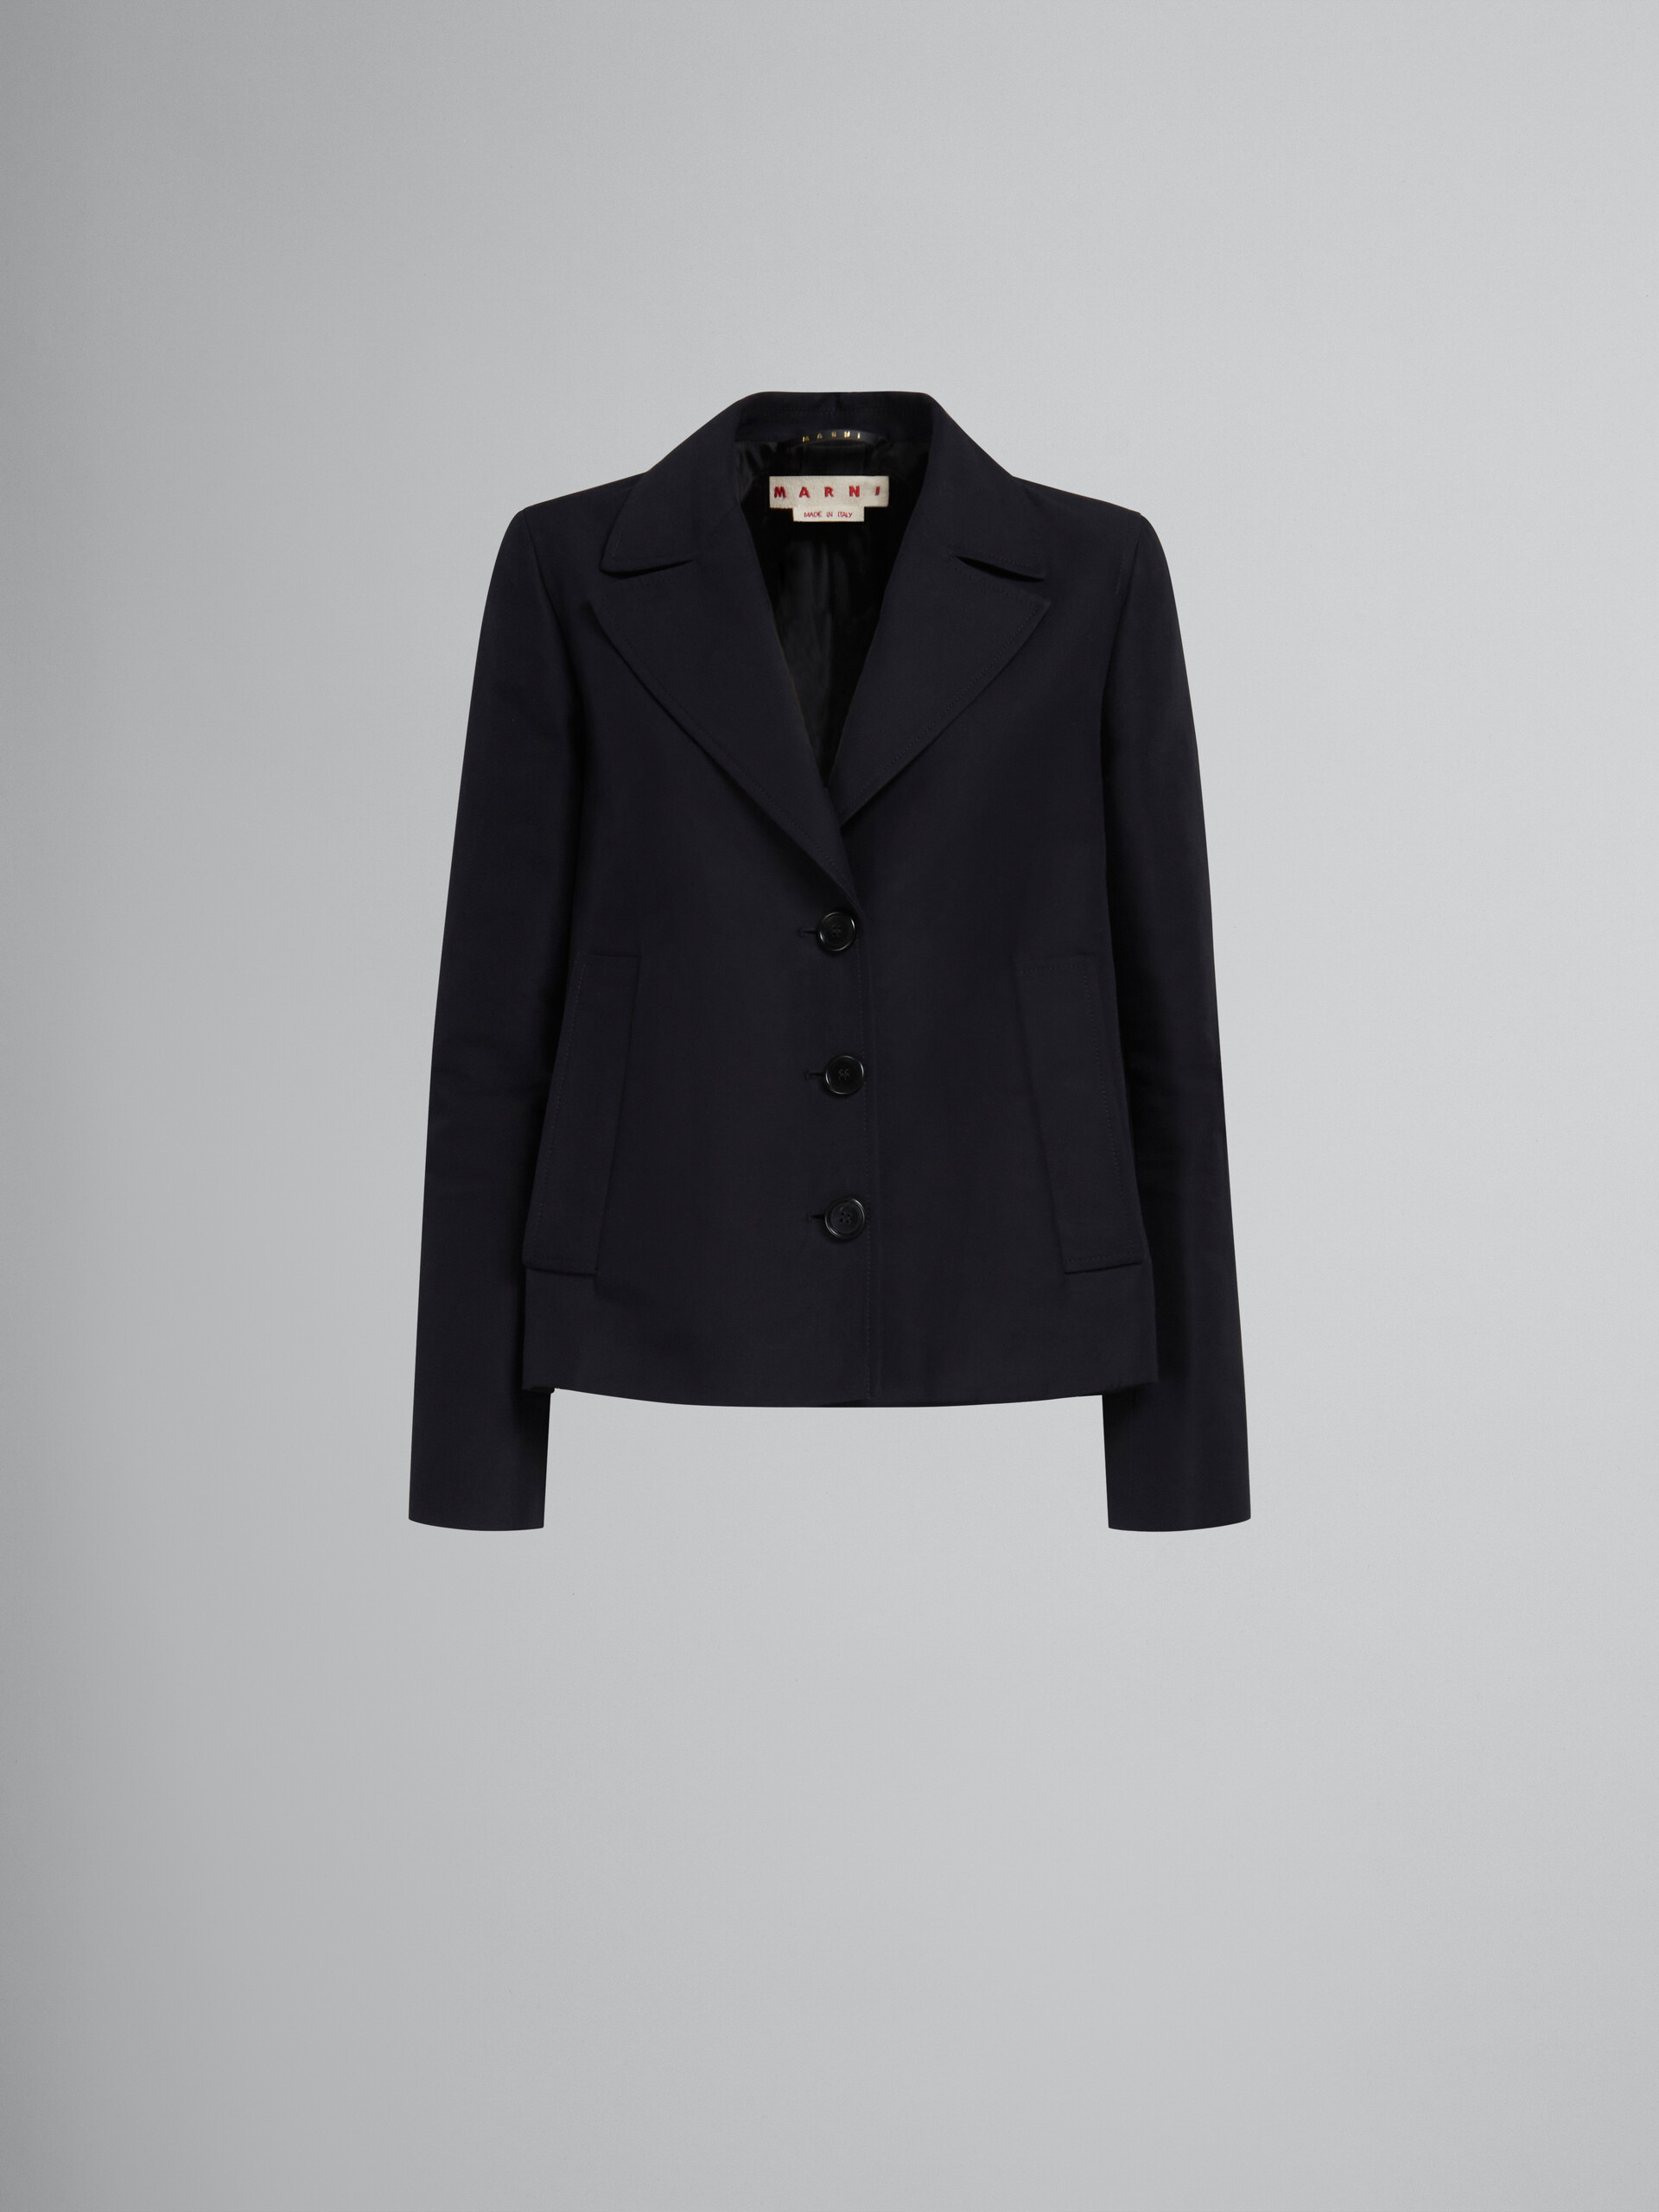 Schwarze Jacke in A-Linie aus Cady mit Falte auf der Rückseite - Jacken - Image 1